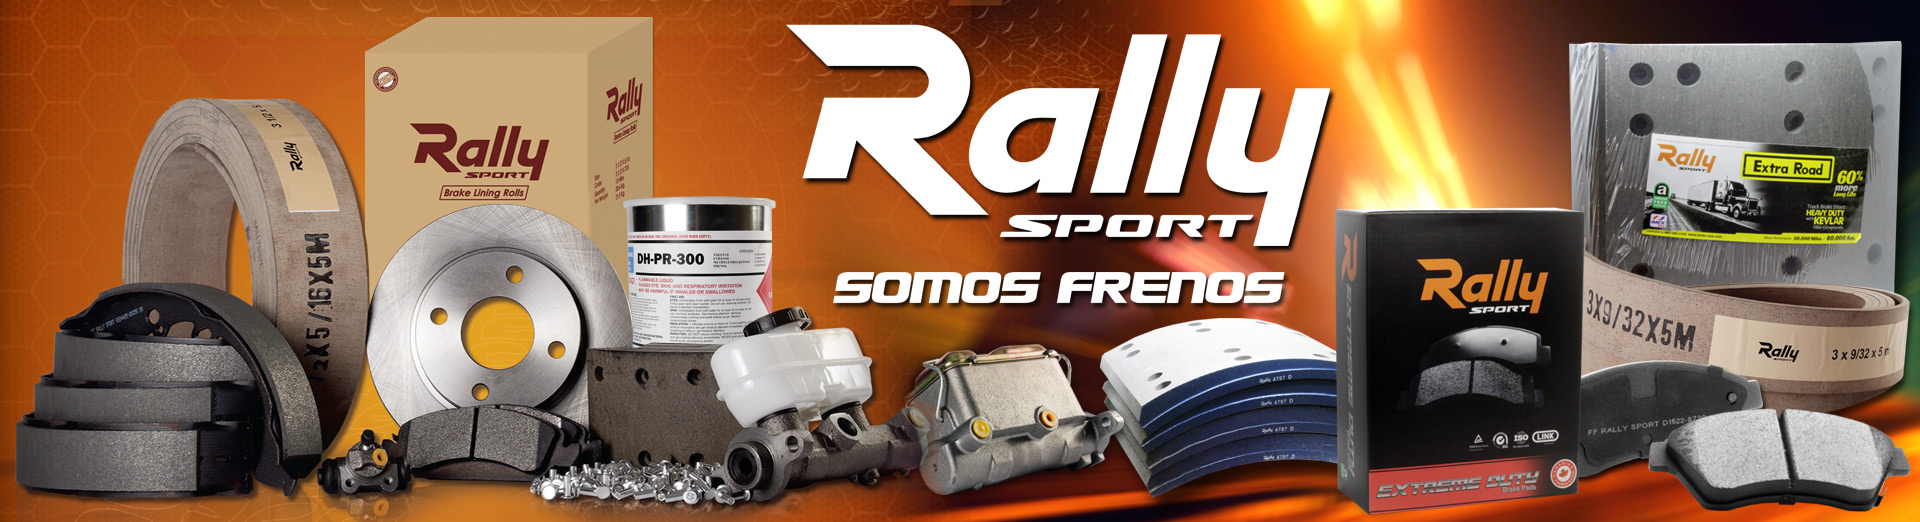 Rally-Sport-frenos-respuestos-piezas-autos-carros-PRODUCTS-BannerTop-1920×522